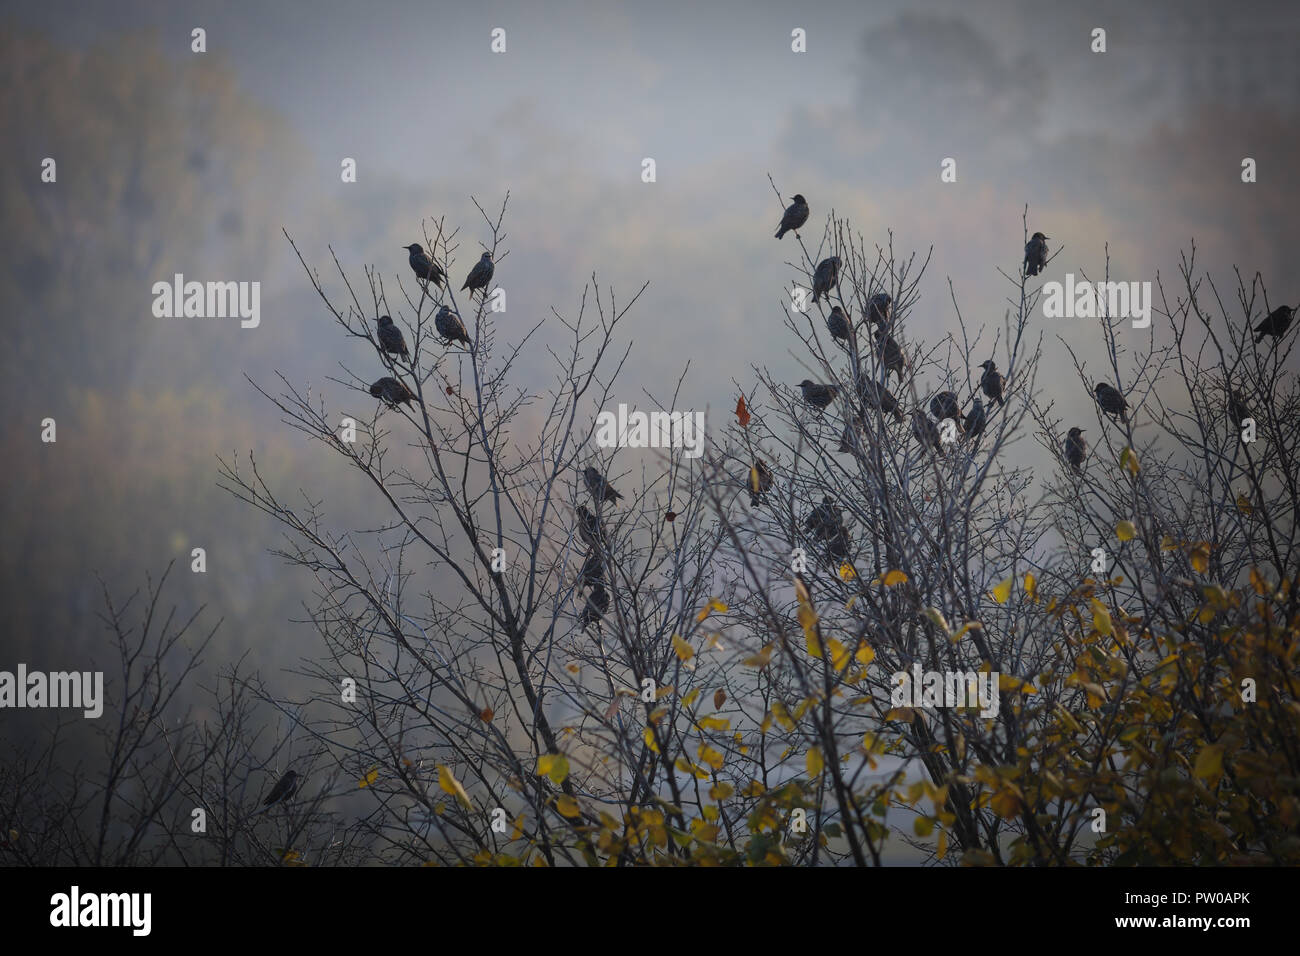 Paisaje otoñal depresivo, triste pájaros sentados en un árbol, una imagen oscura con vignette Foto de stock